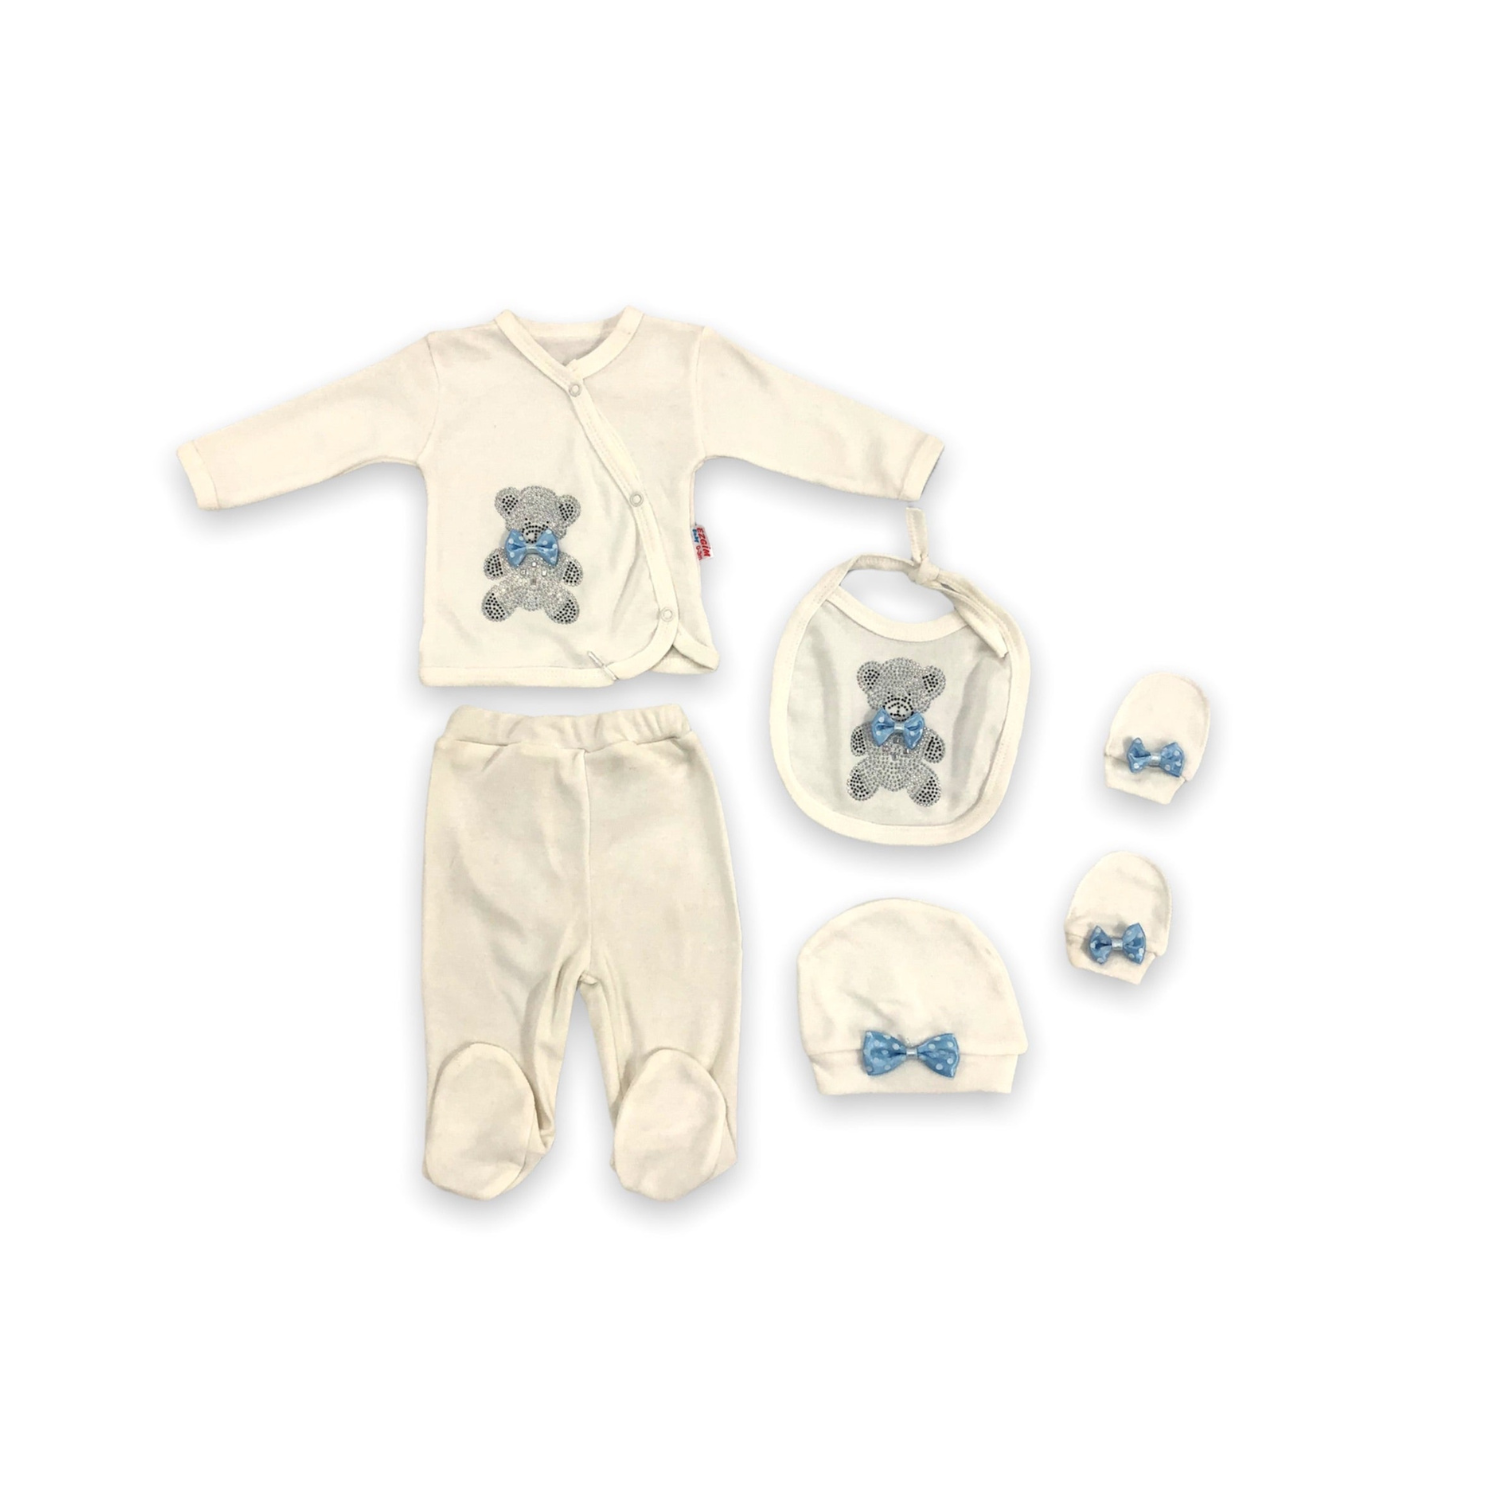 The Blue Bear Baby Pajama Set